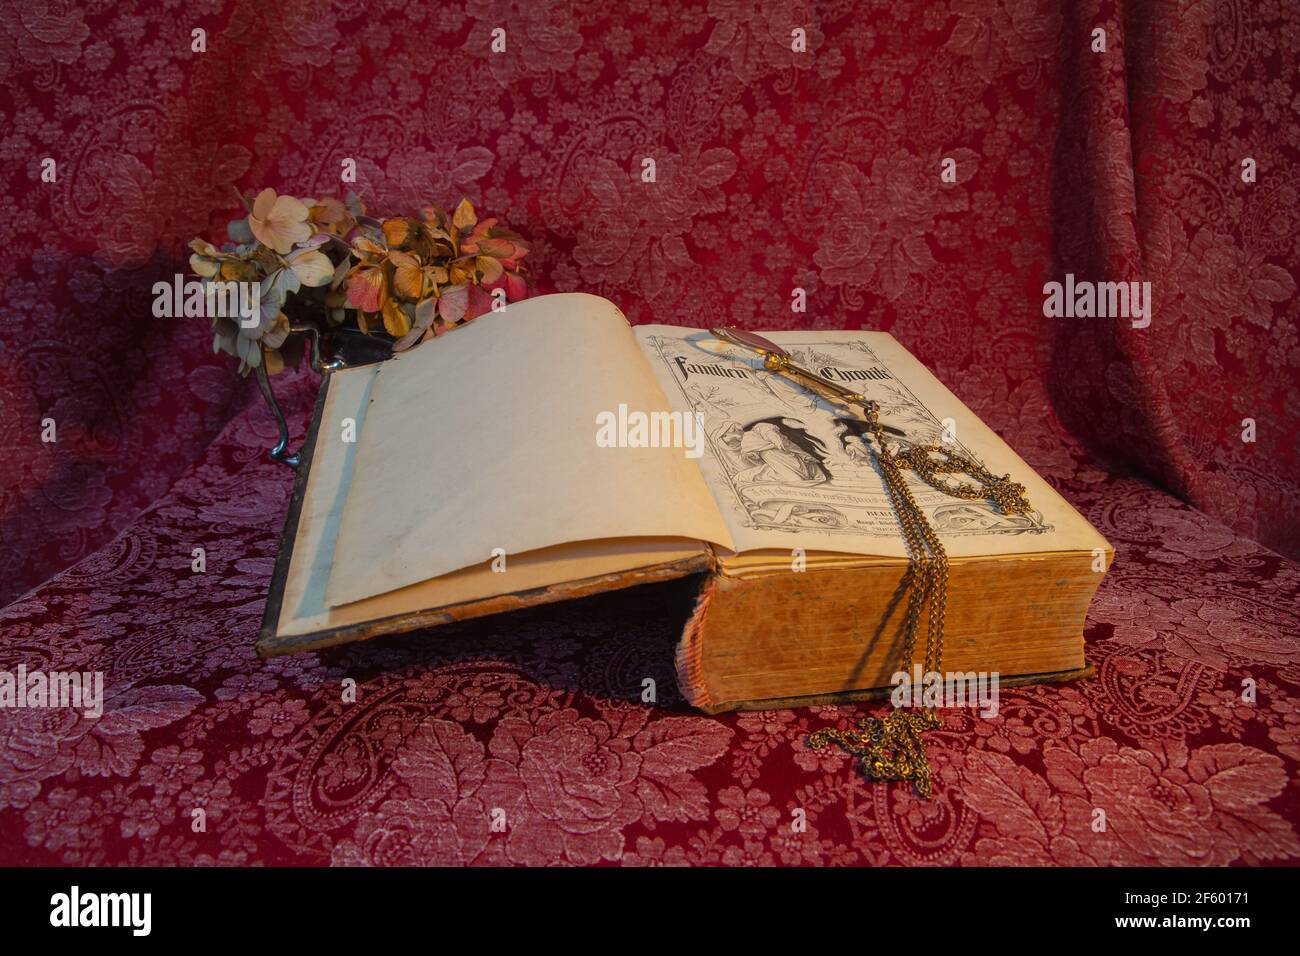 Book, old book, close up view, still life, Nahaufnahme, Detailaufnahme, Dateil shot, Arangement, Kerzenhalter, wilted flower, flower, Stillleben Stock Photo